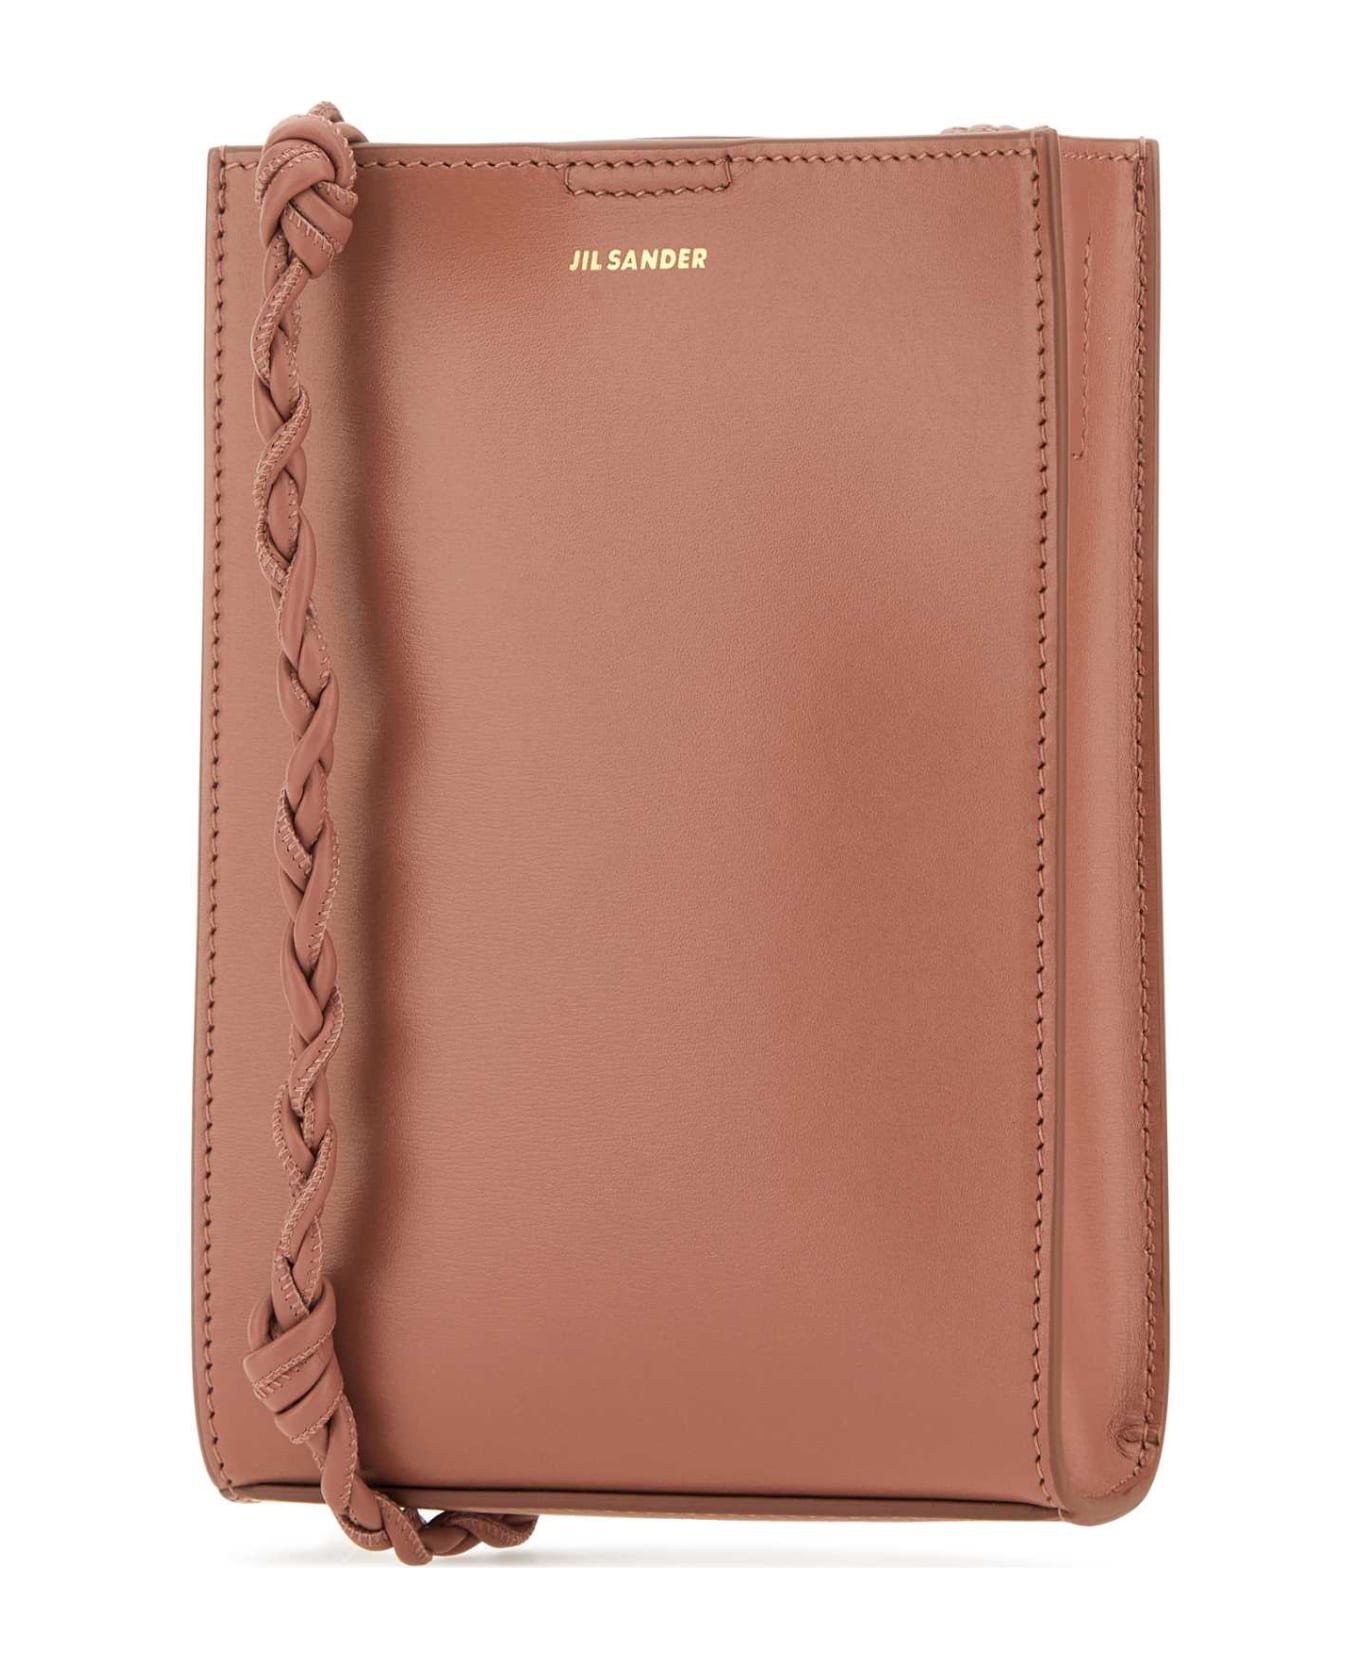 Jil Sander Dark Pink Leather Small Tangle Shoulder Bag - 904